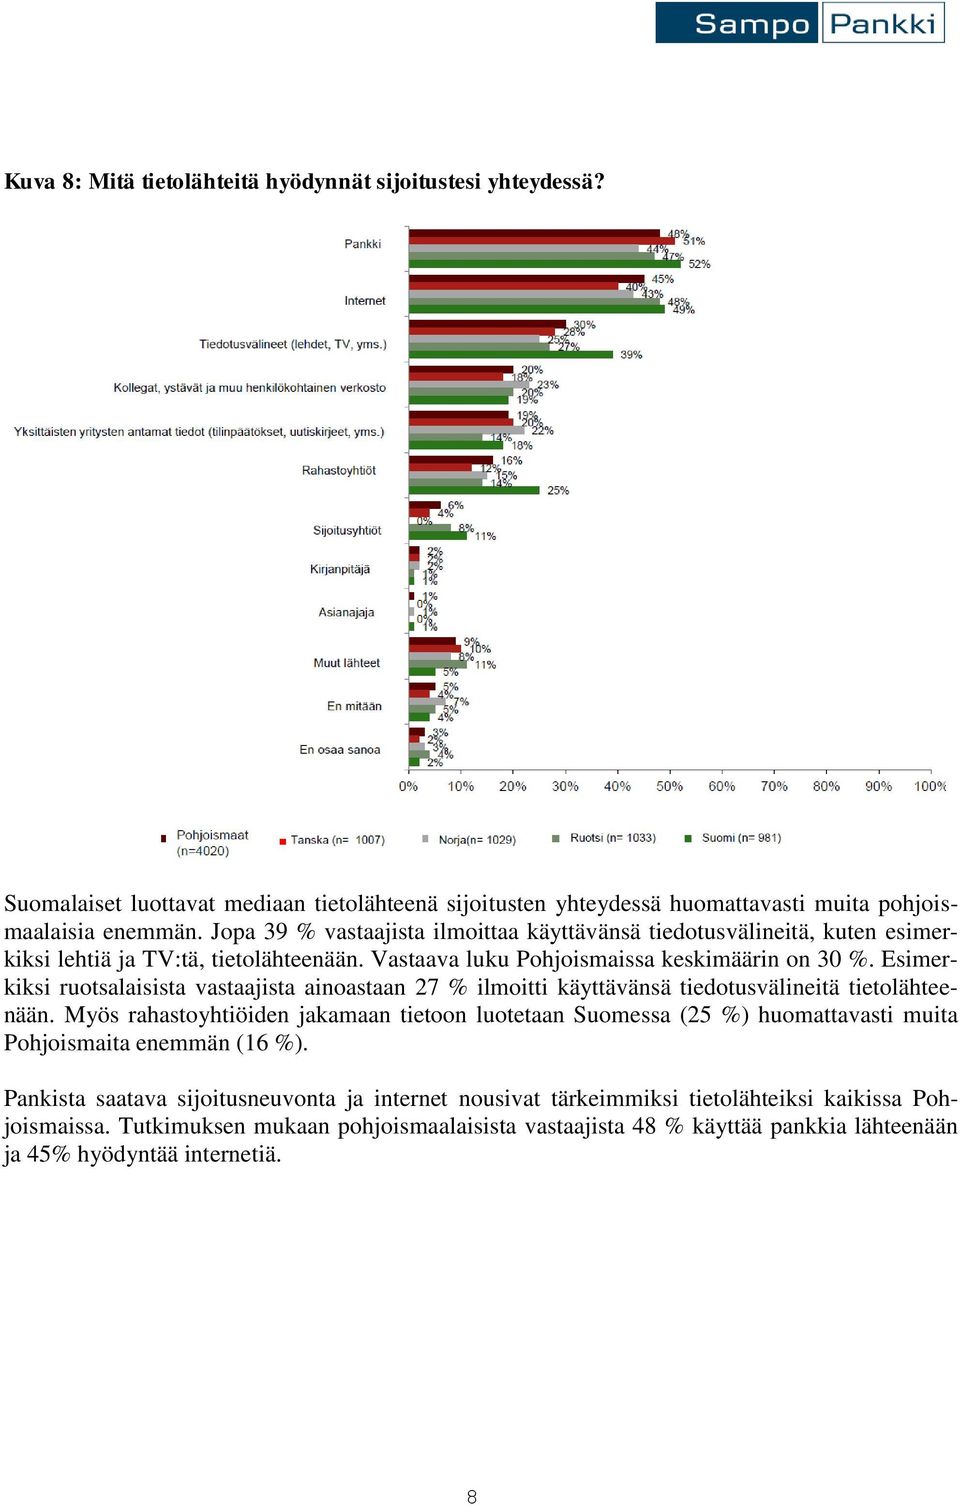 Esimerkiksi ruotsalaisista vastaajista ainoastaan 27 % ilmoitti käyttävänsä tiedotusvälineitä tietolähteenään.